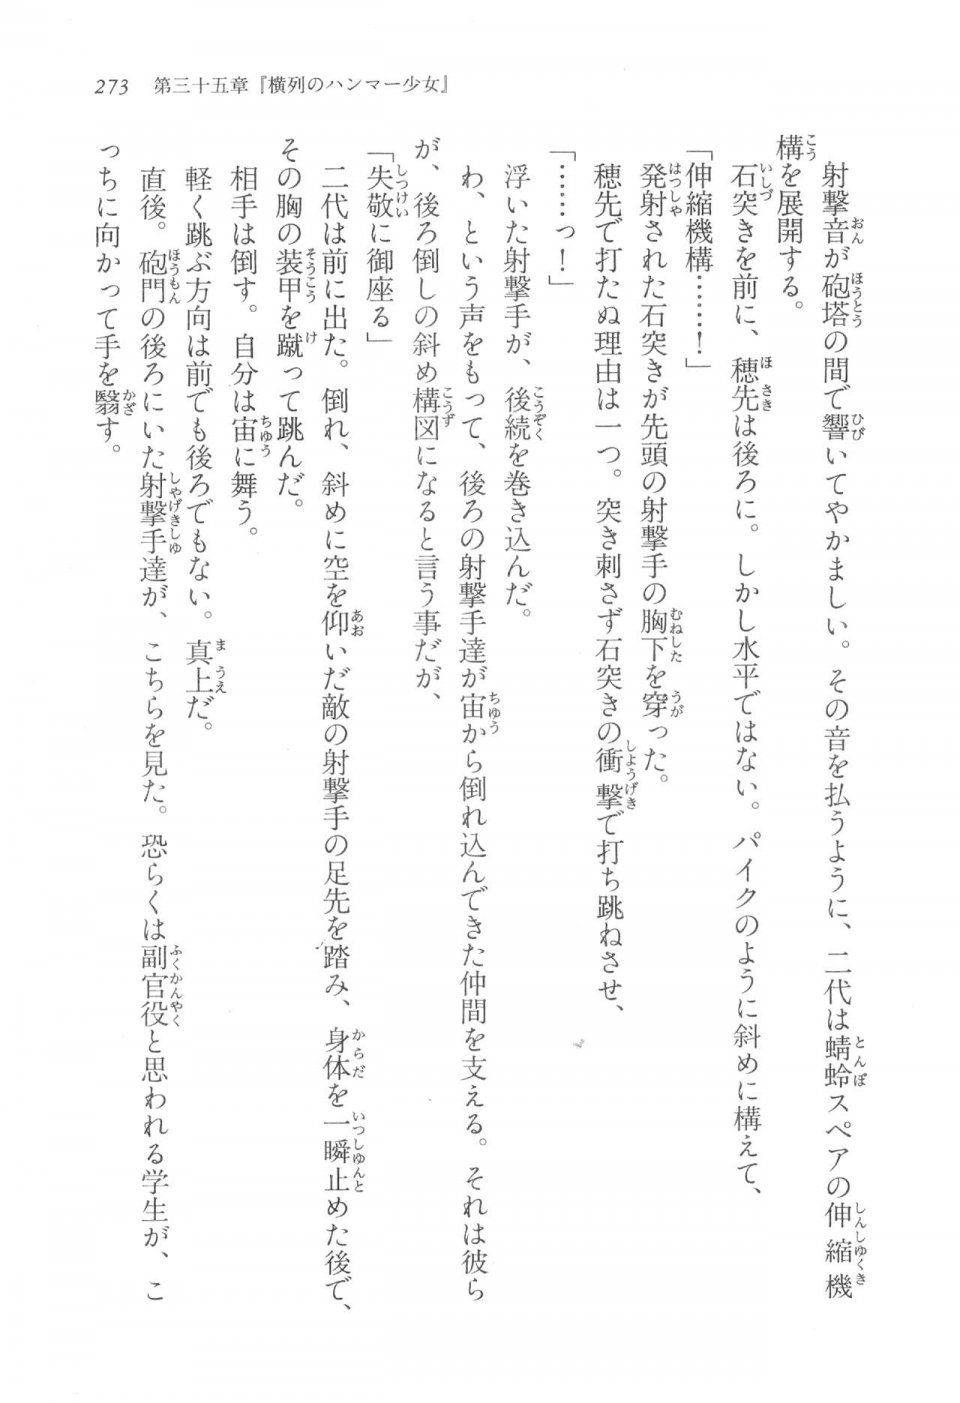 Kyoukai Senjou no Horizon LN Vol 17(7B) - Photo #273